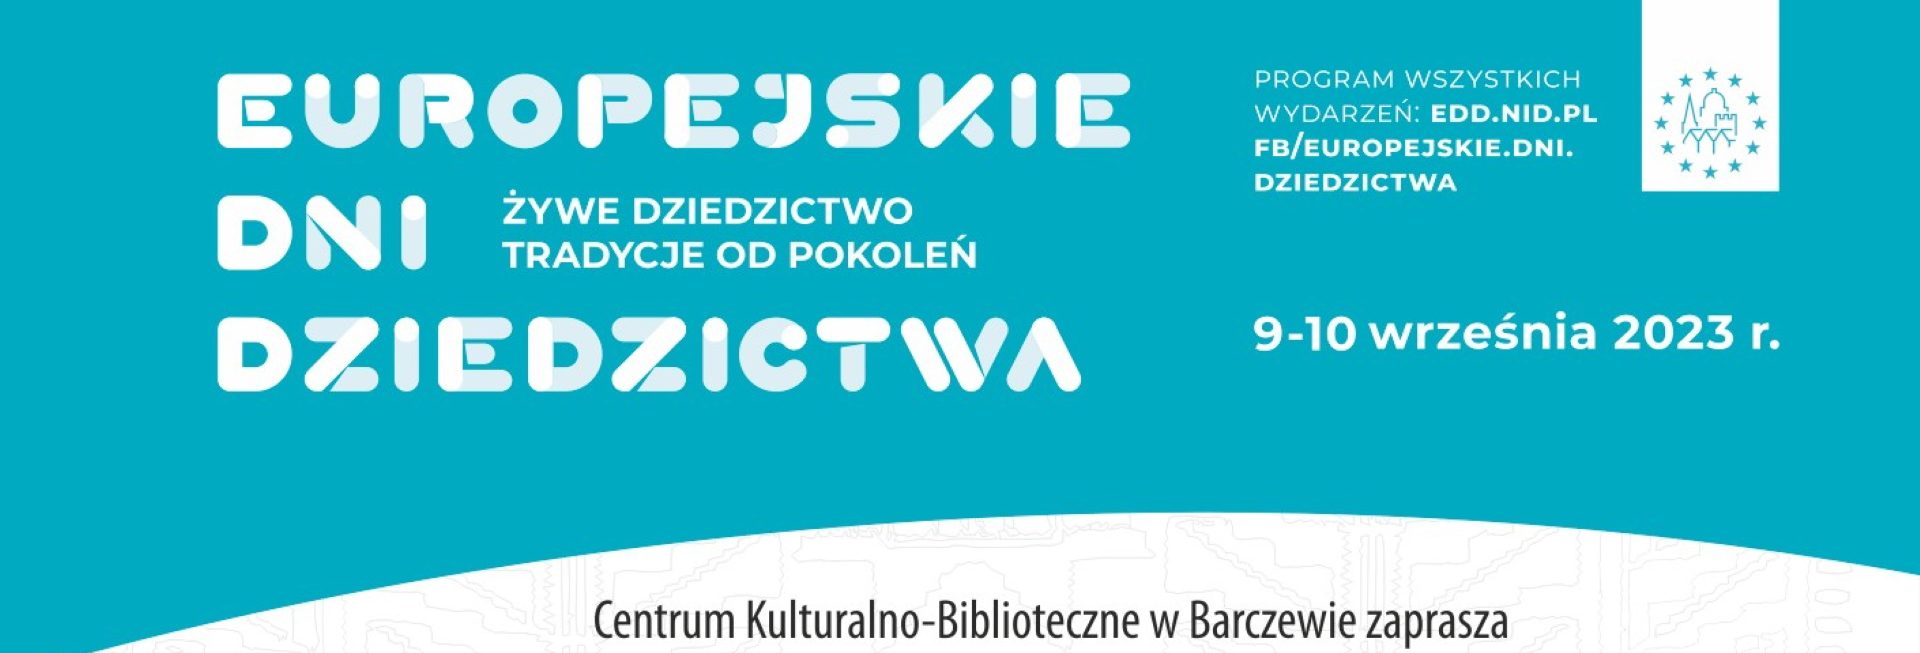 Plakat zapraszający w dniach 9-10 września 2023 r. do Barczewa na Europejskie Dni Dziedzictwa Barczewo 2023.